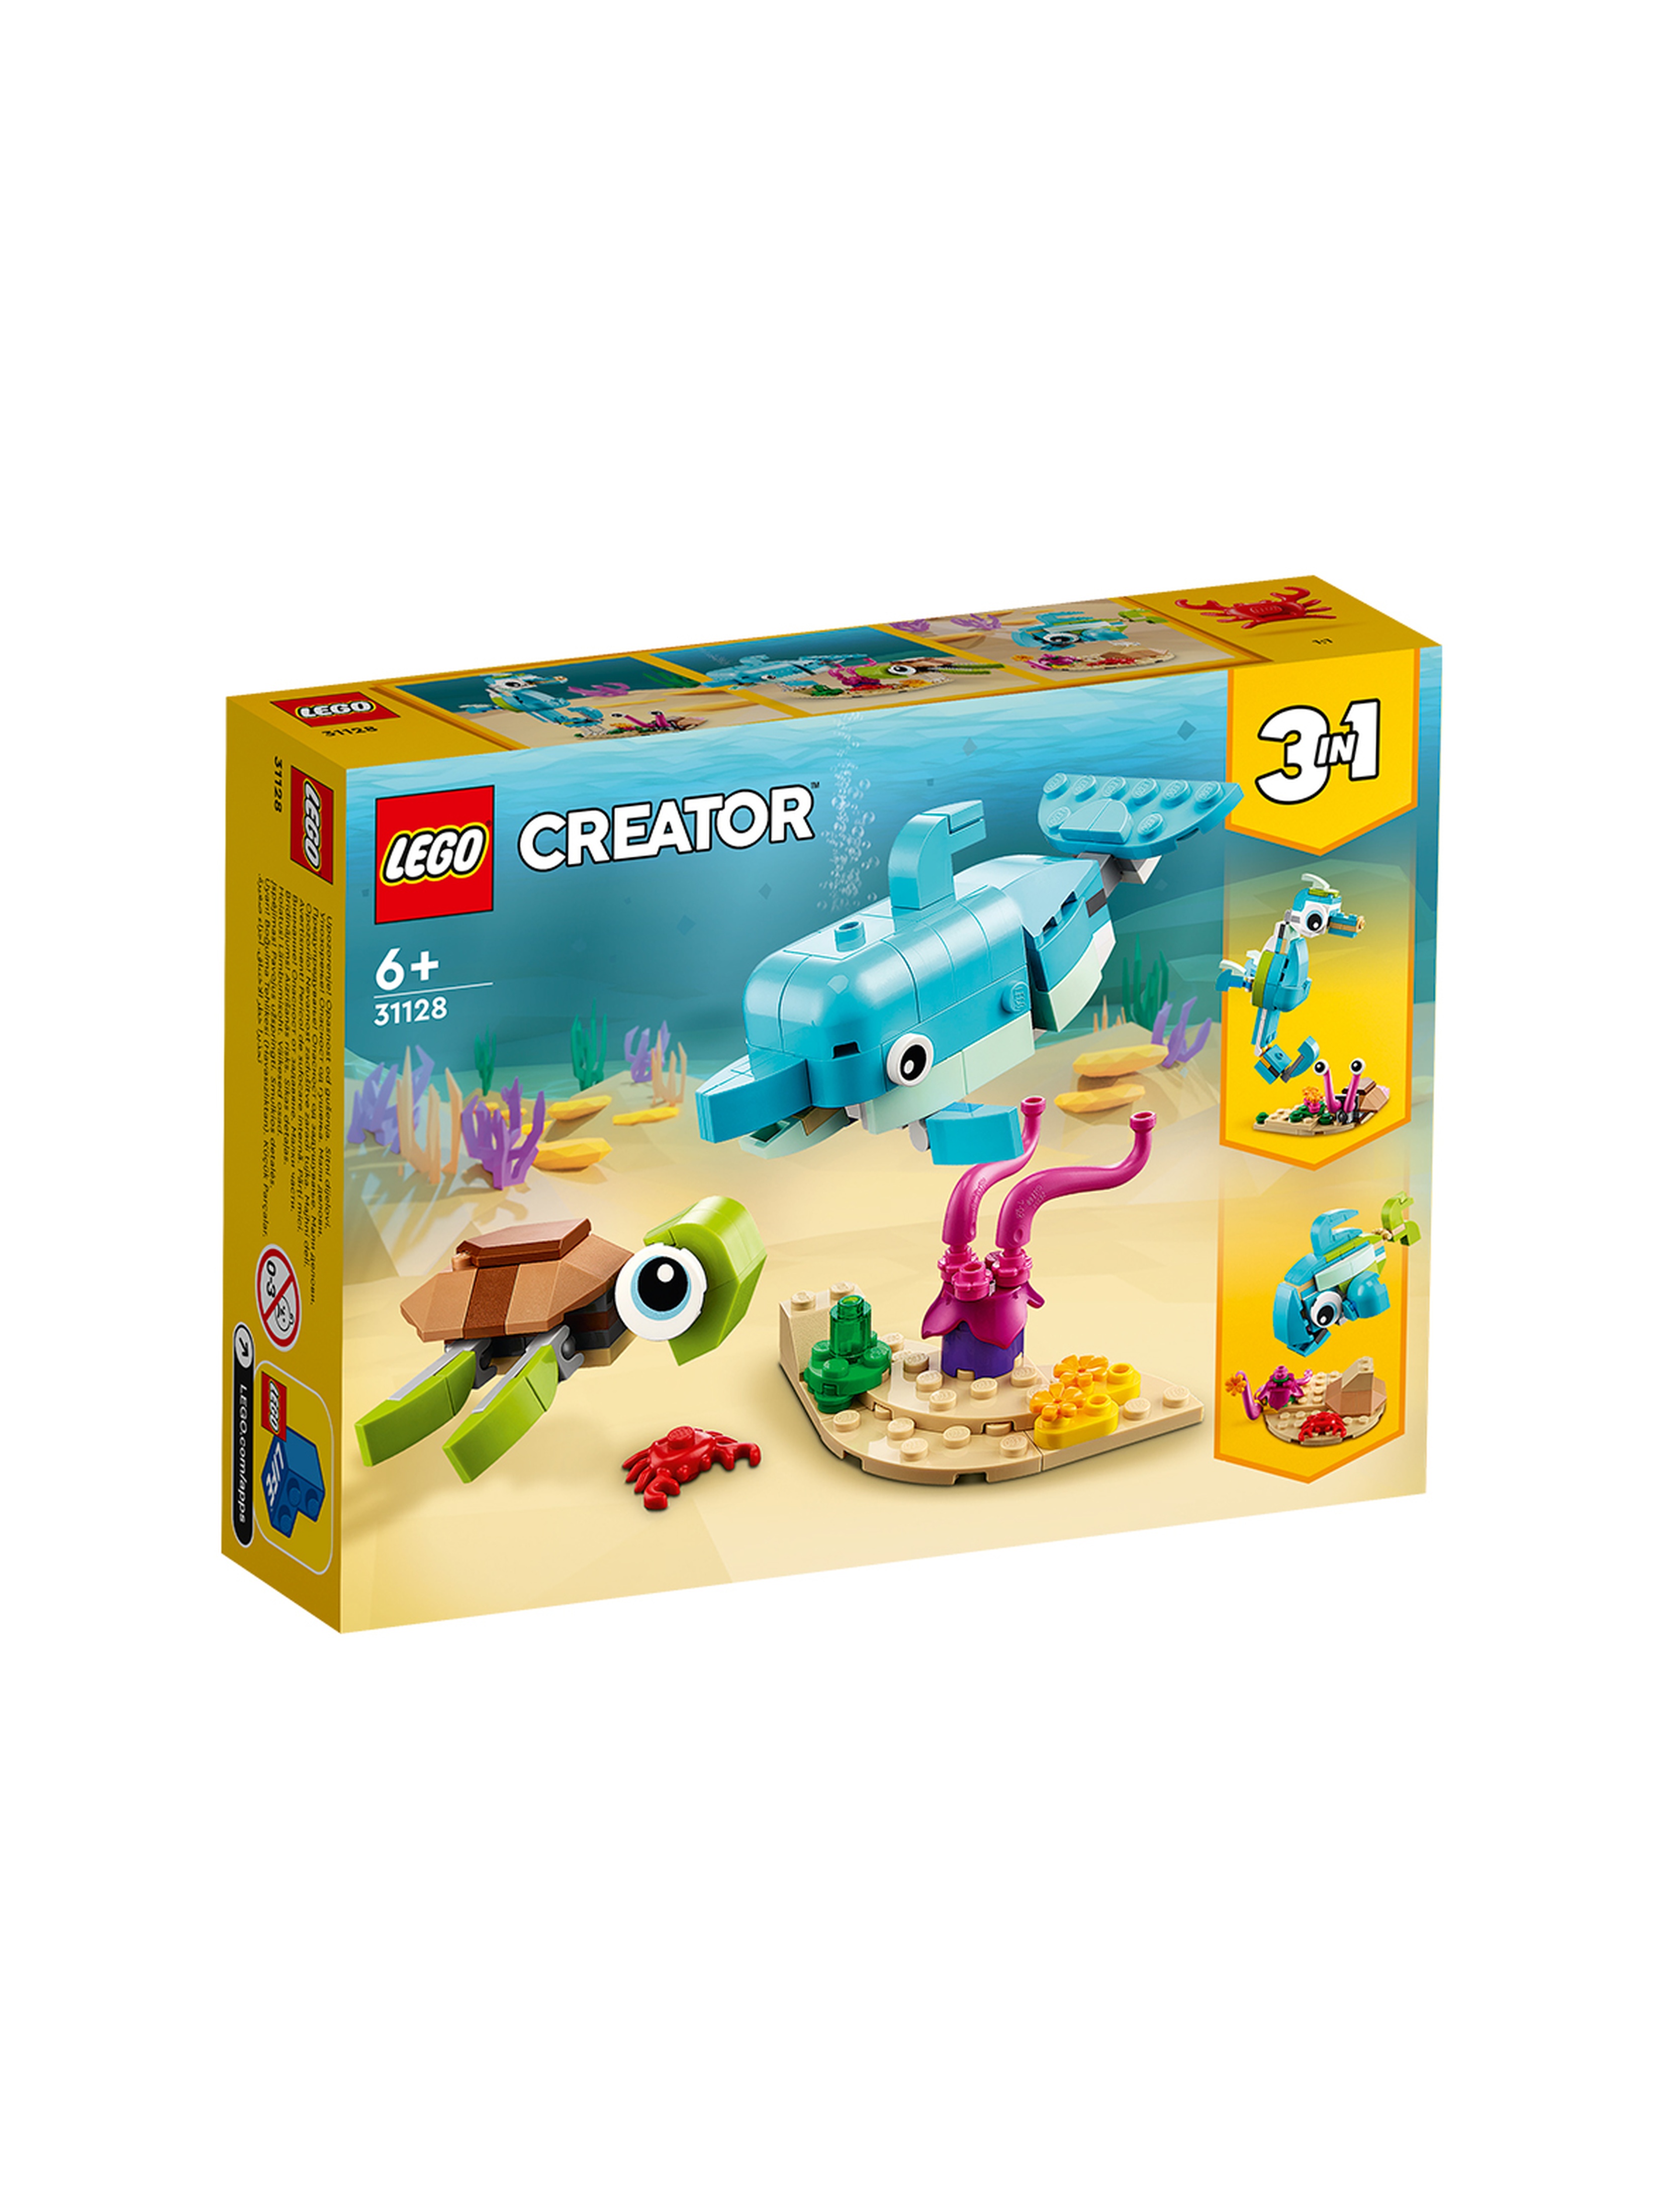 LEGO Creator - Delfin i żółw 31128 - 137 elementów, wiek 6+